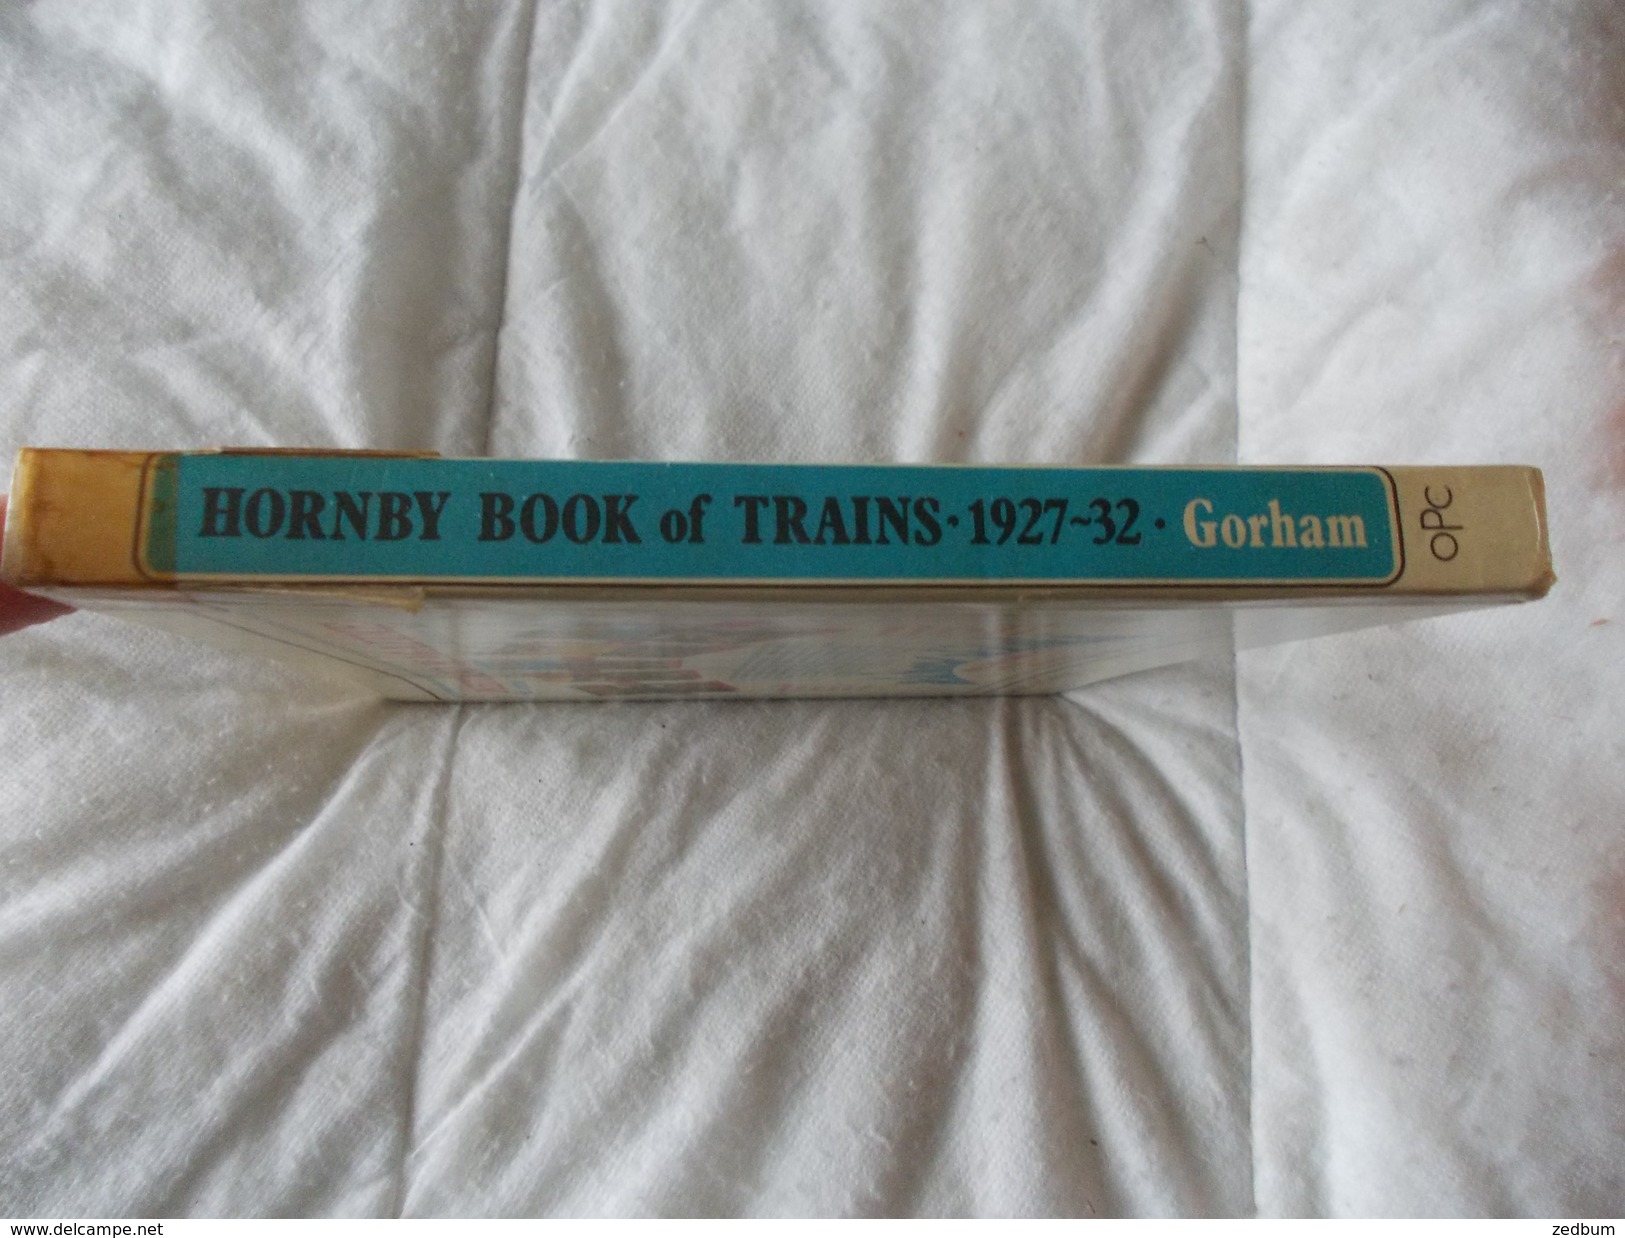 Hornby Book Of Trains A Reprint Of The Catalogue For 1927 1932 - Themengebiet Sammeln